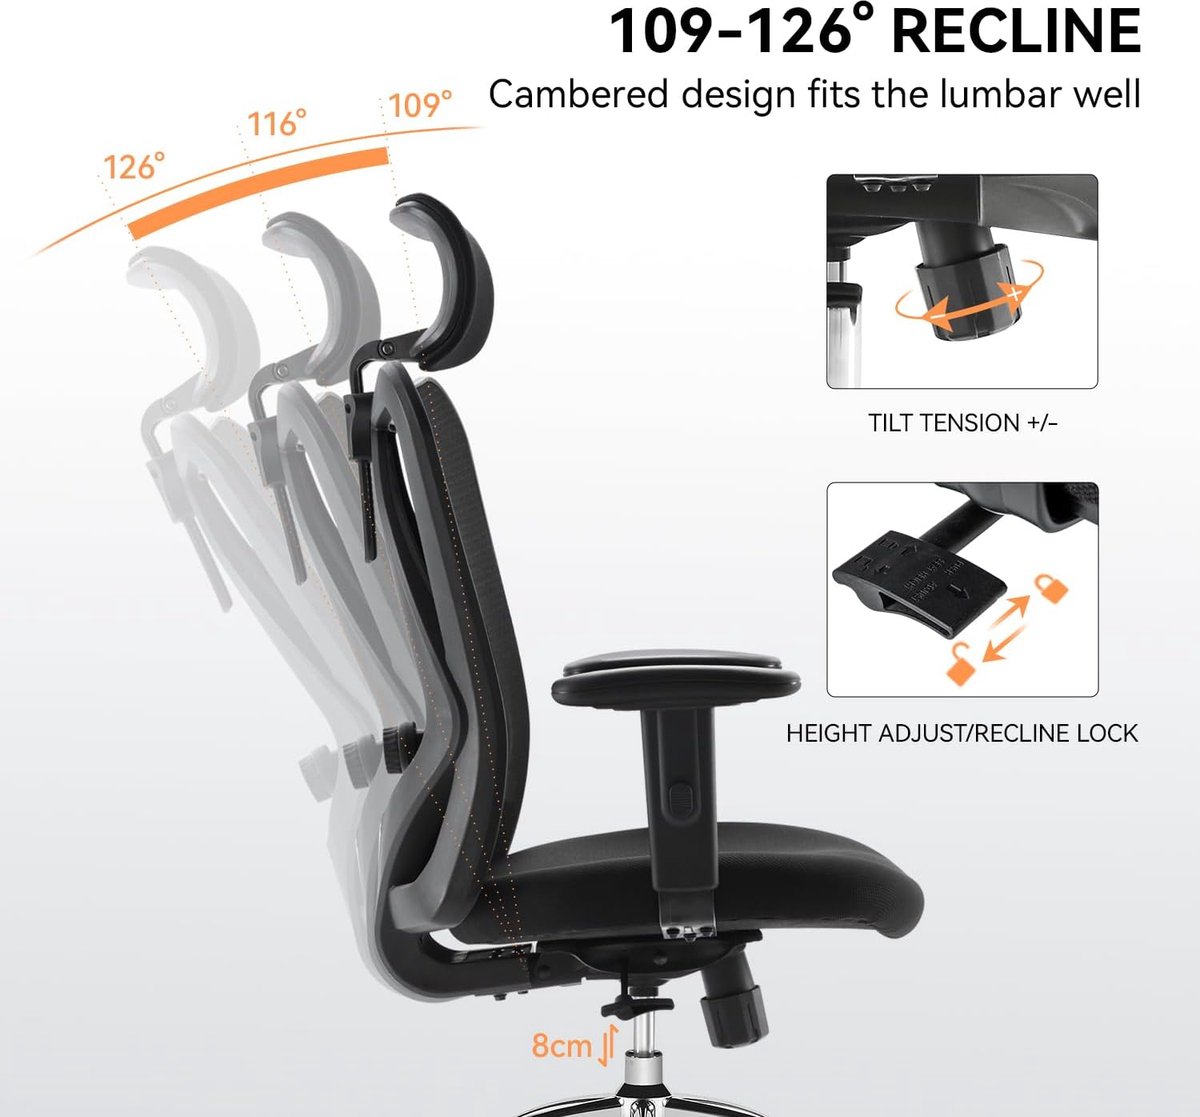 ergonomische bureaustoel met voetensteun, computer bureaustoel, verstelbare hoofdsteunen, rugleuning en armleuning mesh stoel (zwart)